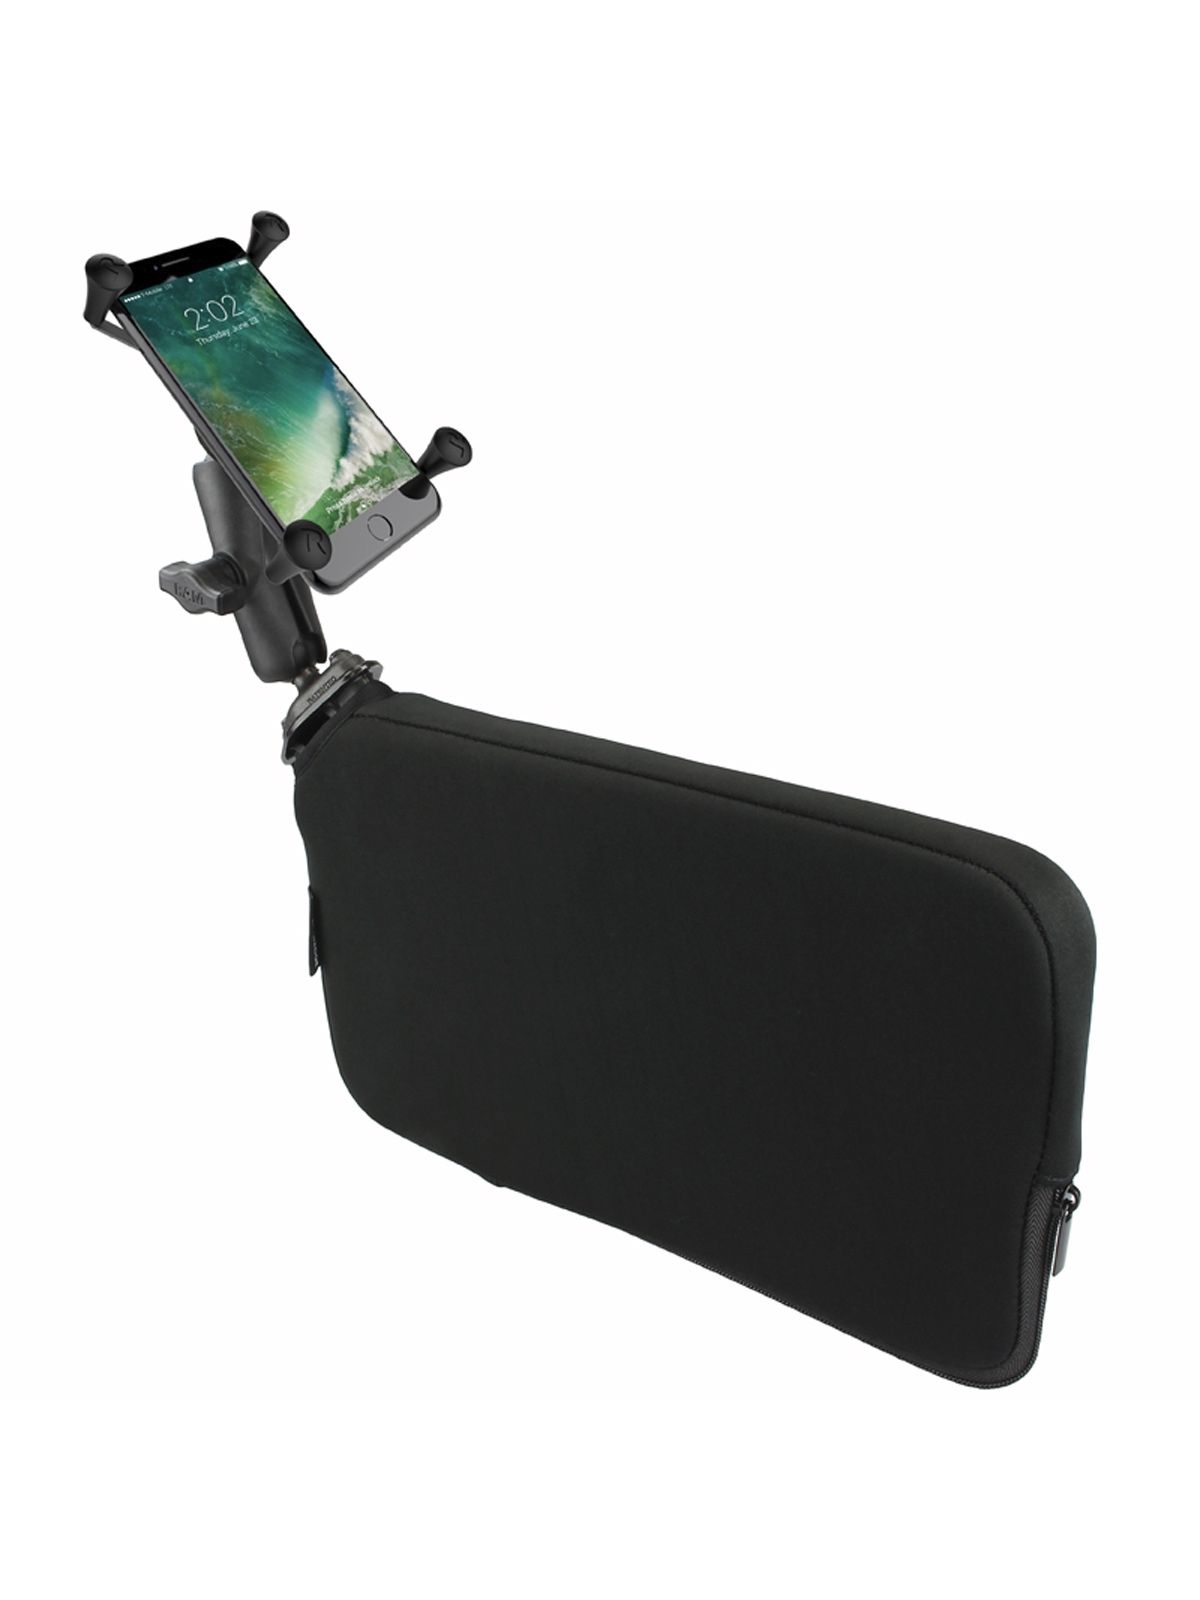 RAM Mounts Fahrzeug-Halterung mit X-Grip Halteklammer für Smartphones bis 114,3 mm Breite - B-Kugel (1 Zoll), Tough-Wedge (aufblasbar), mittlerer Verbindungsarm